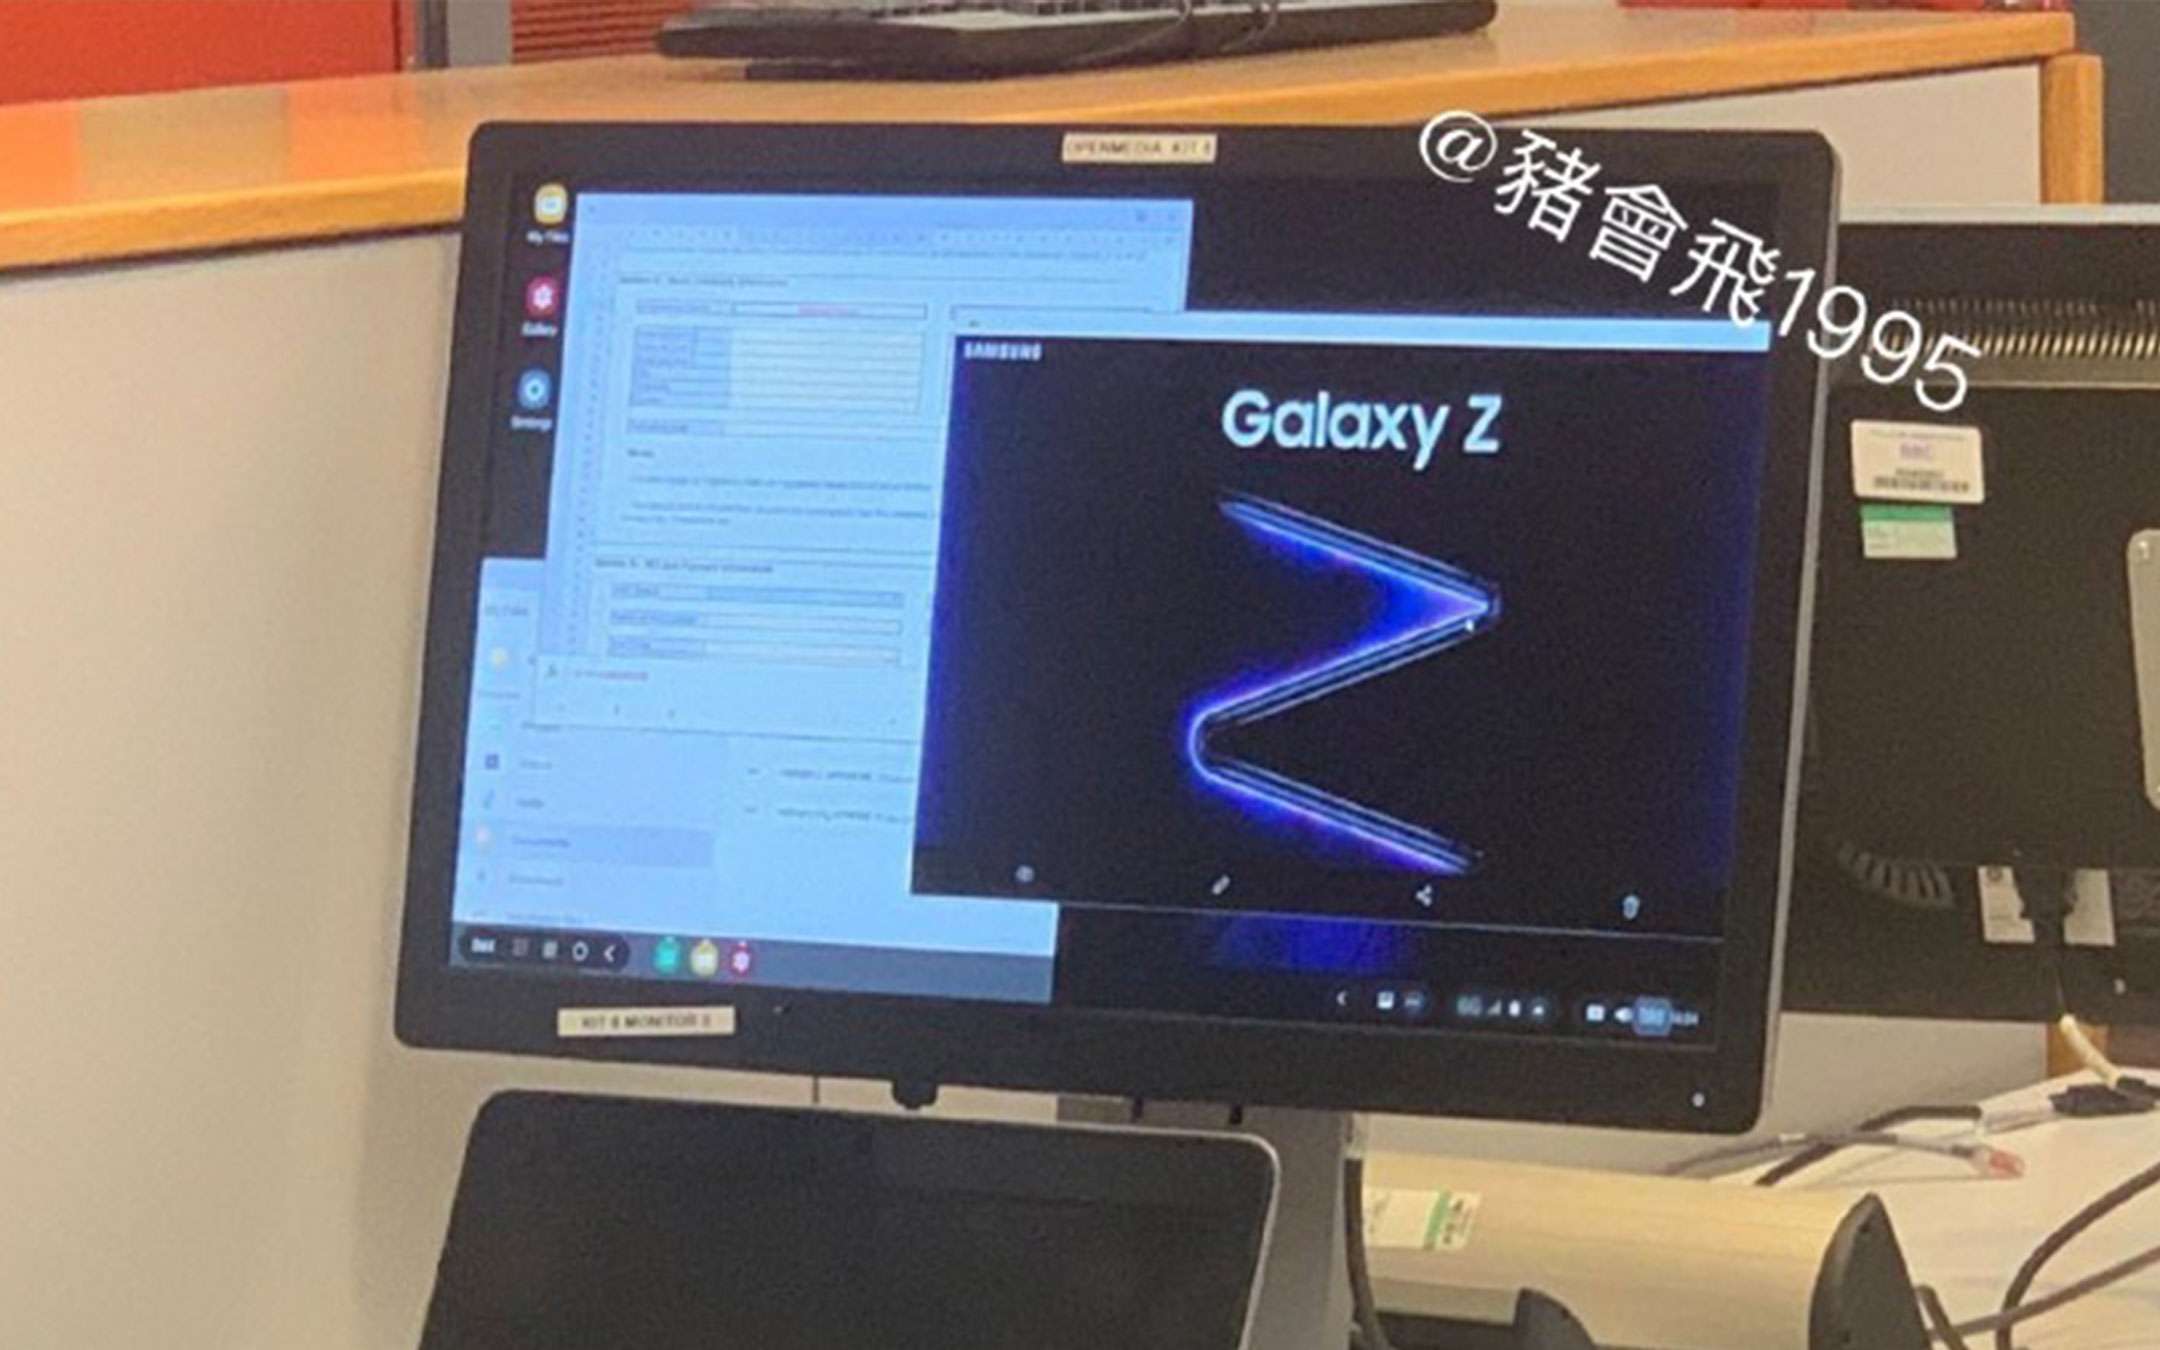 Galaxy Z mostrato in una presunta immagine promo